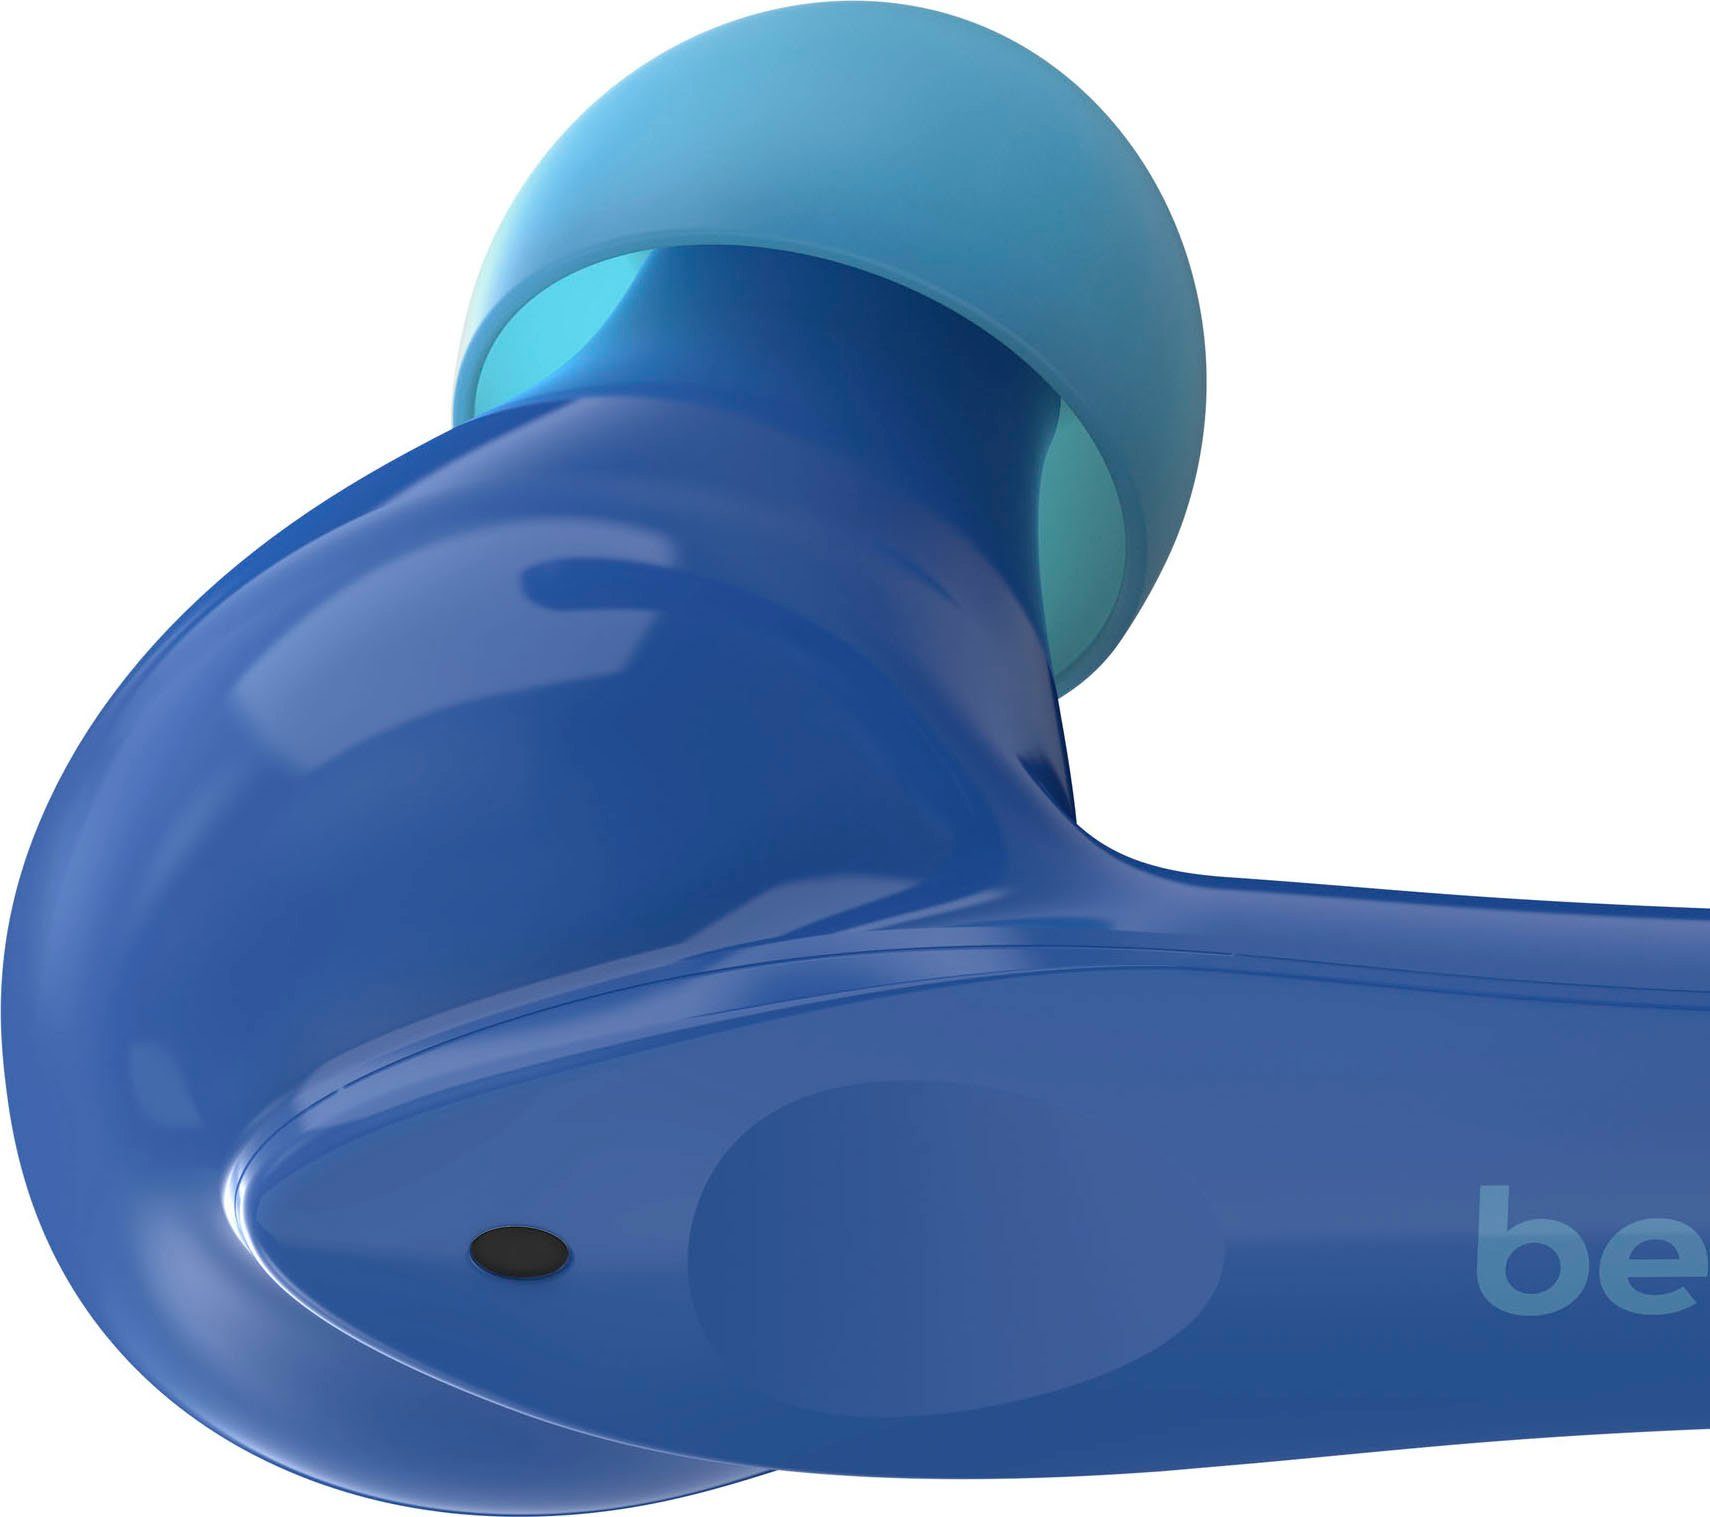 Belkin SOUNDFORM 85 am In-Ear-Kopfhörer begrenzt; wireless Kopfhörer) dB Kopfhörer blau (auf Kinder - NANO